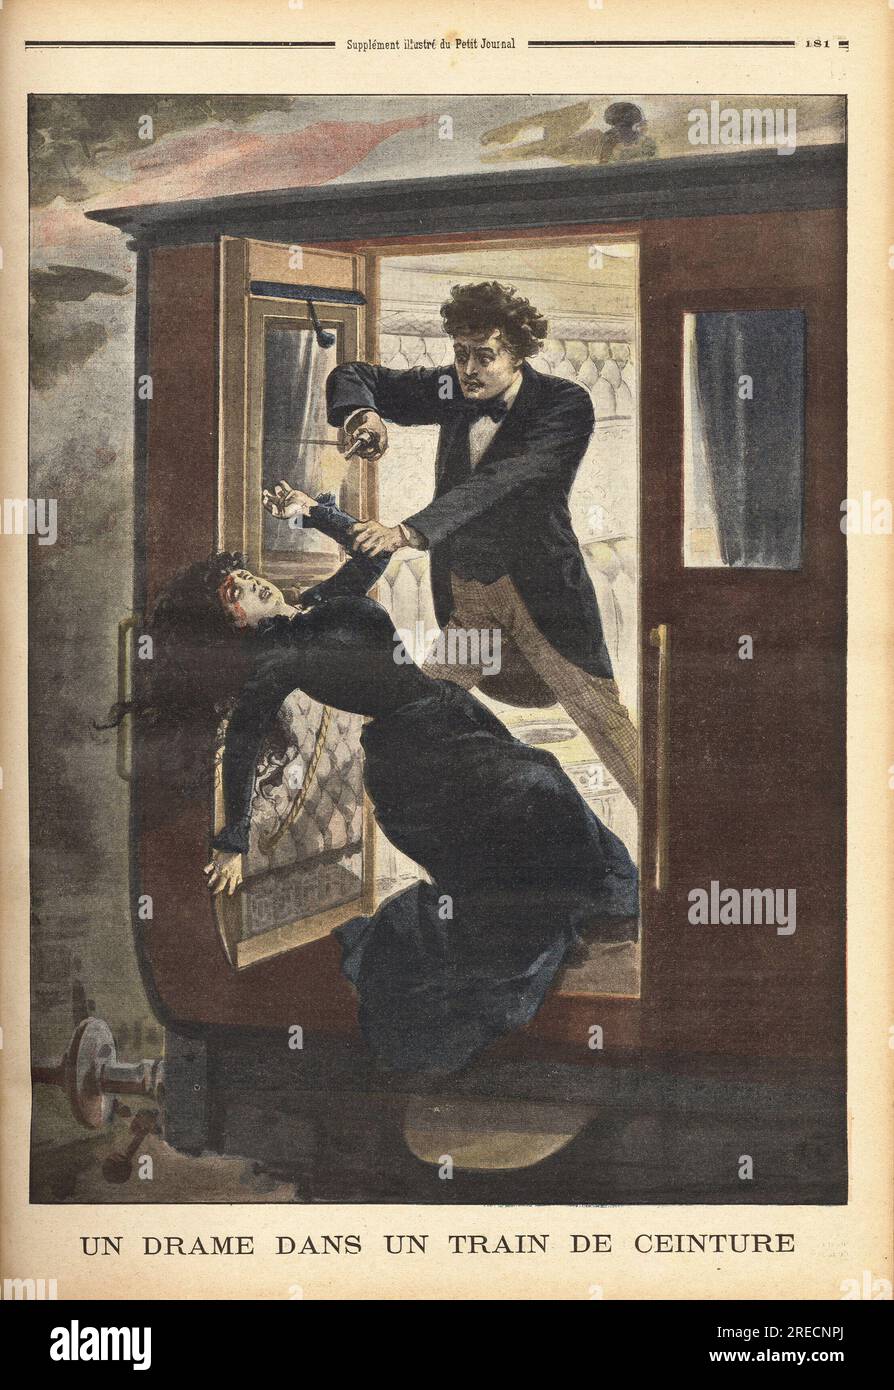 Dans un train de la ceinture parisienne, un jeune homme tire deux balles de pistolet dans la TE d'une jeune fille qui refusait ses avances, puis la jette par la portiere du train en marche. Gravure in "Le Petit Journal" 961901. . Stockfoto